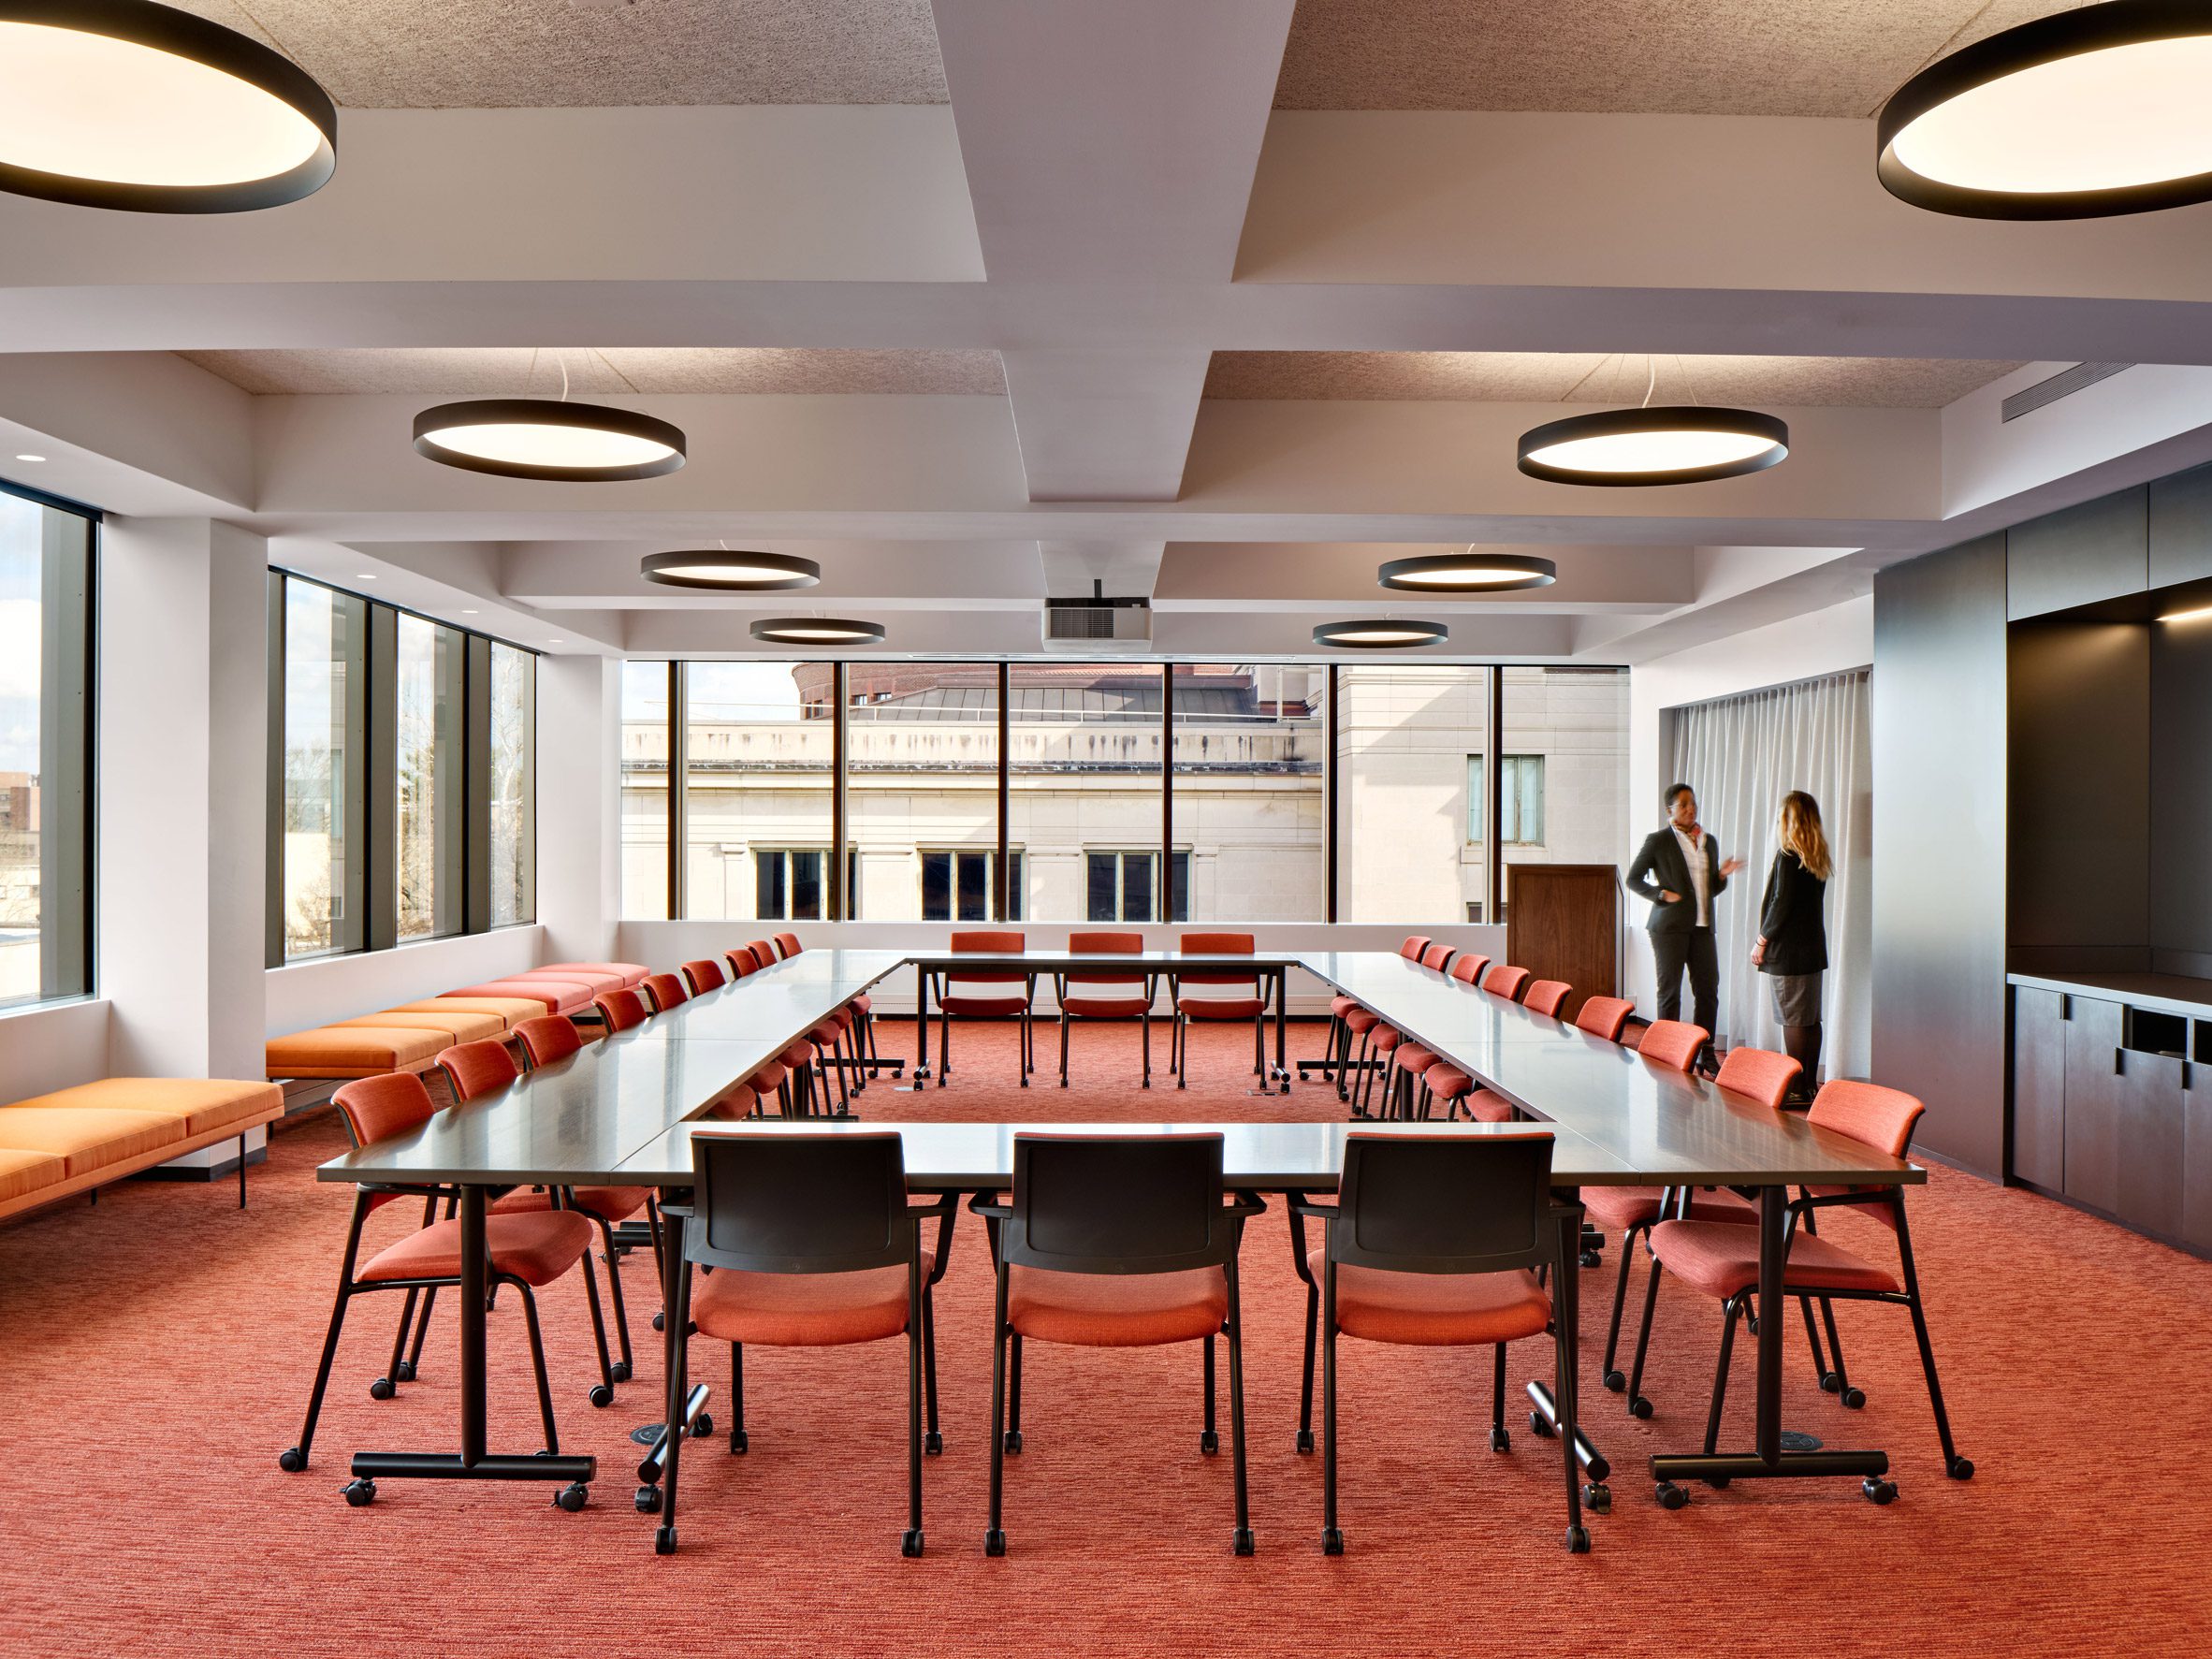 Meeting room designed by Deborah Berke Partners